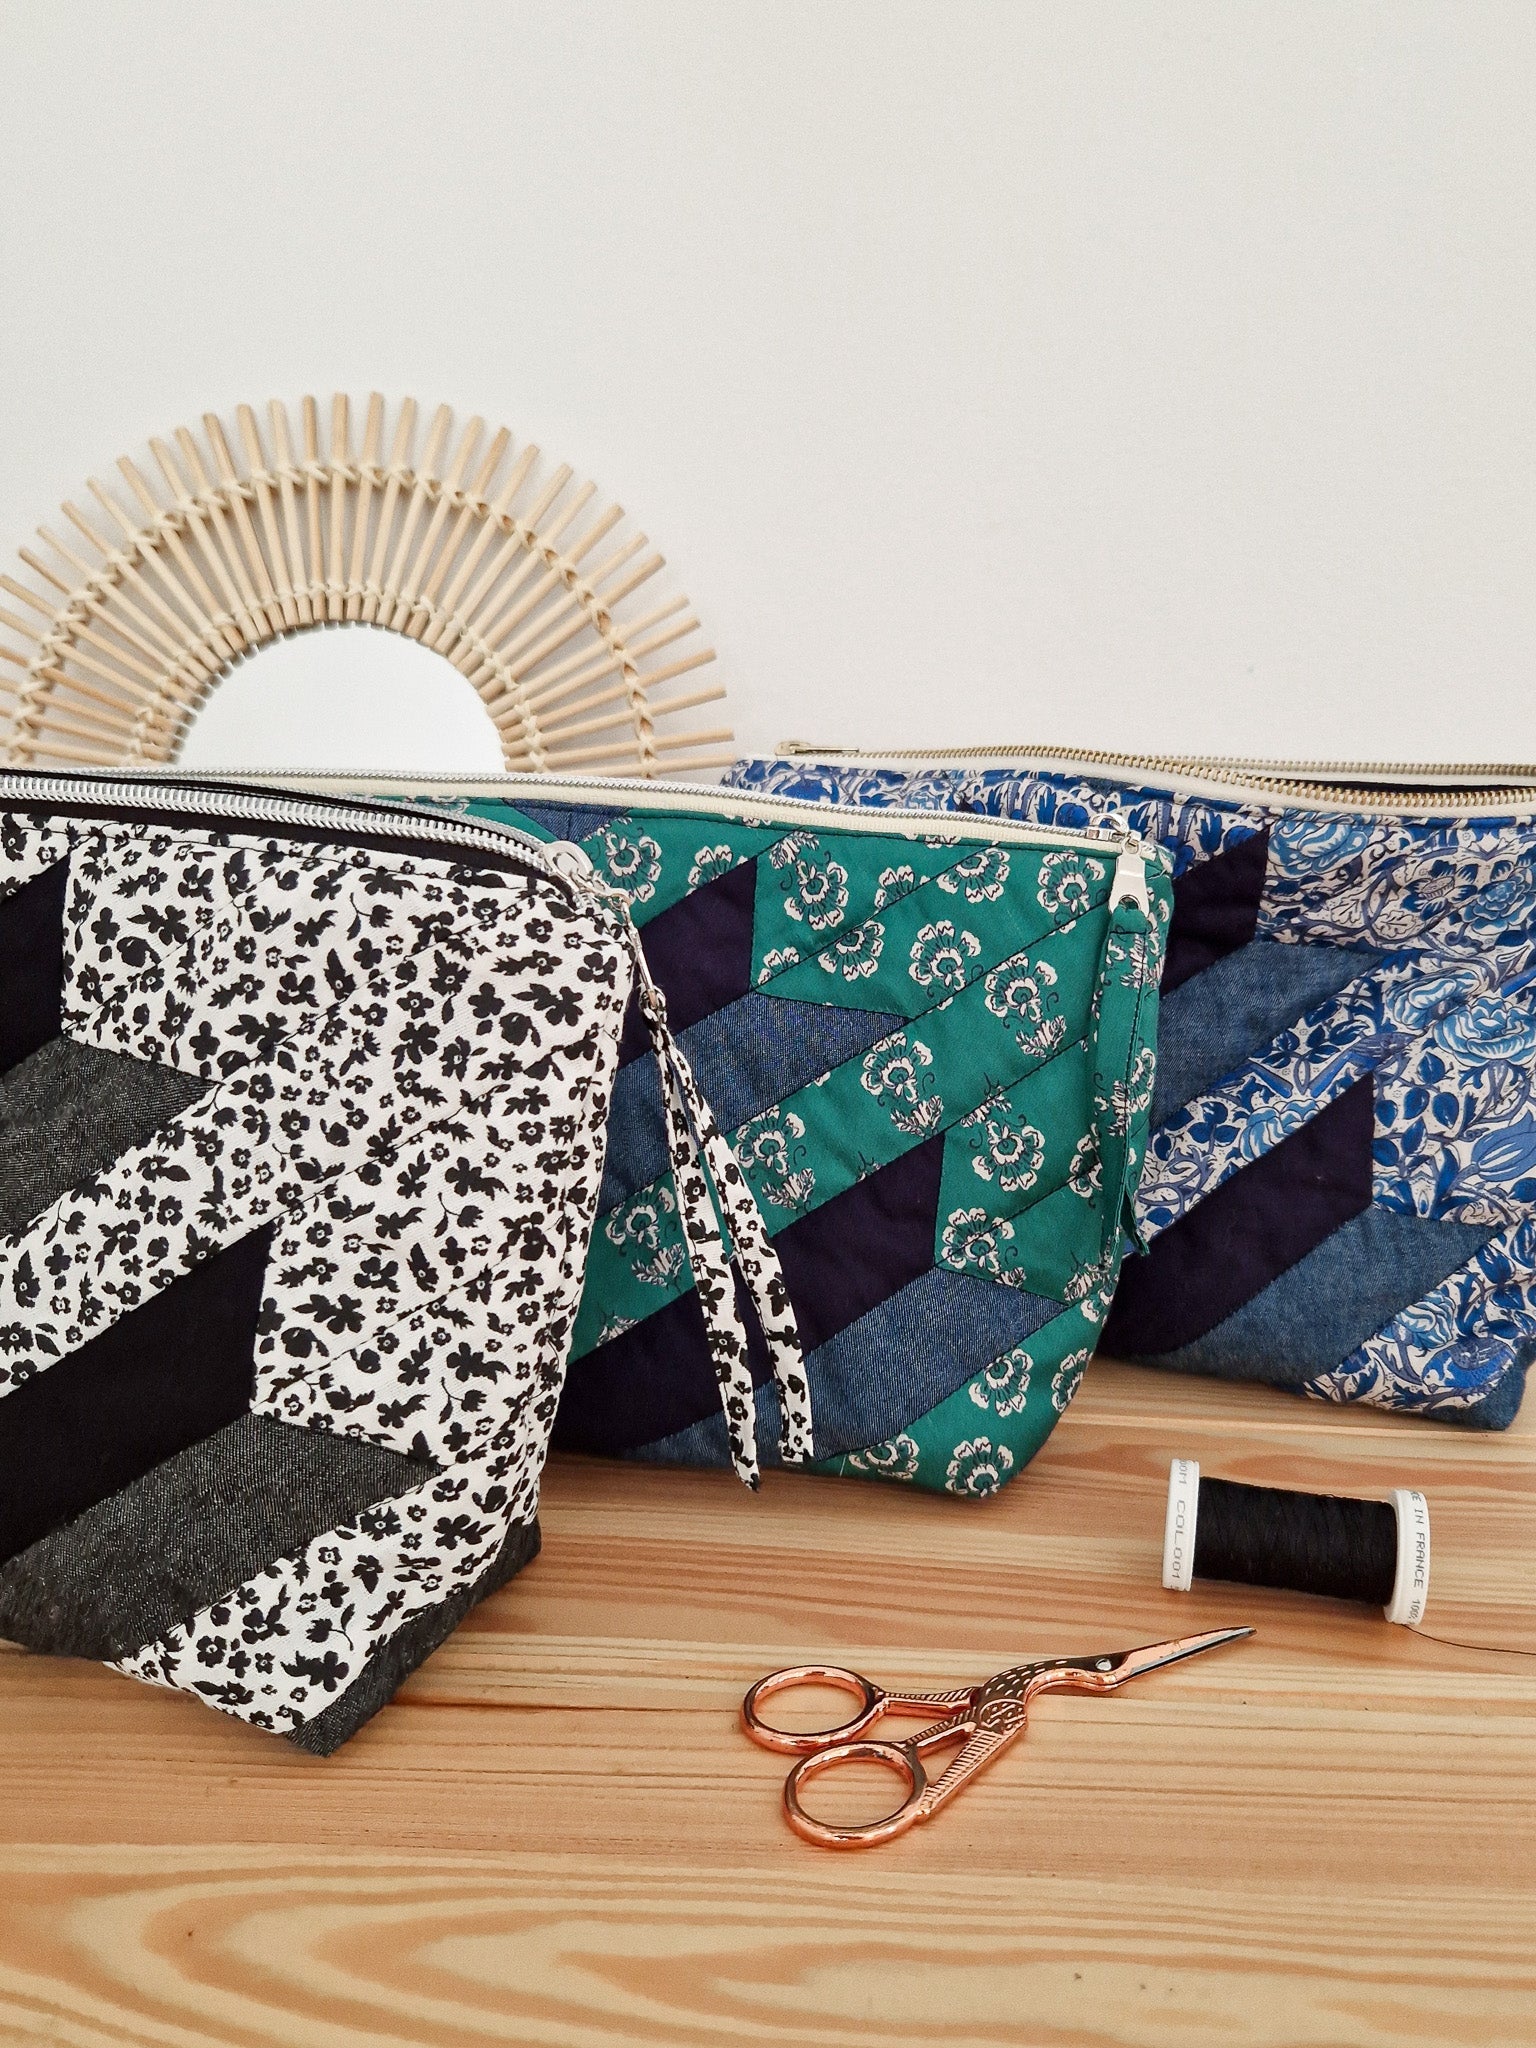 Joli Kit Couture - Trousse Patti (4 coloris au choix) - Joli Lab